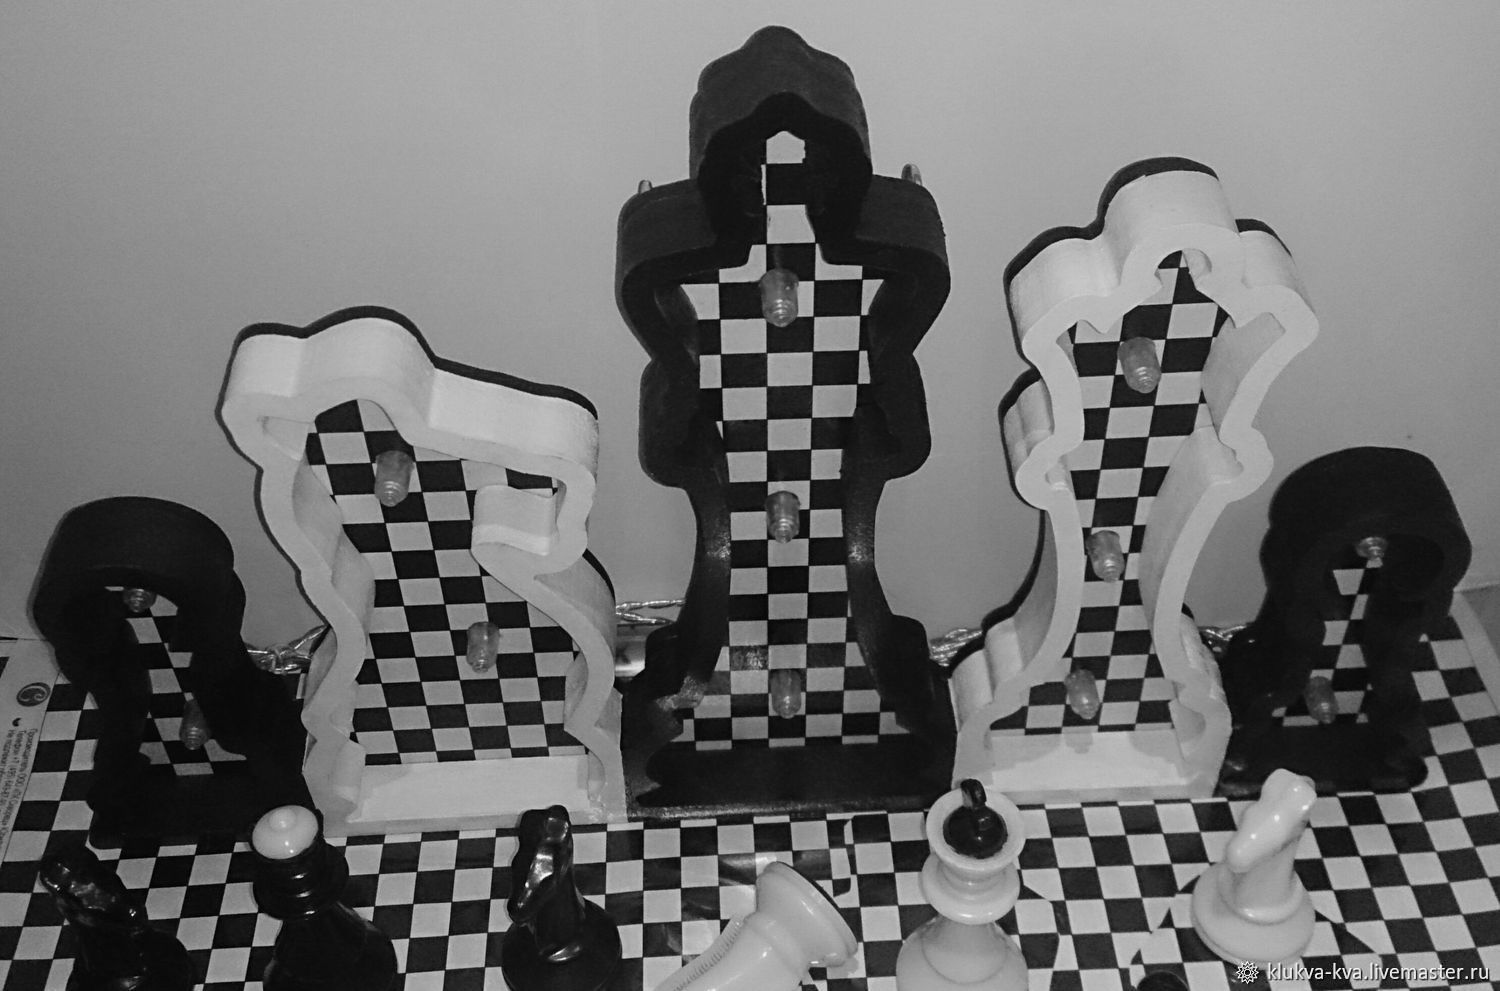 Поделки на тему шахматы